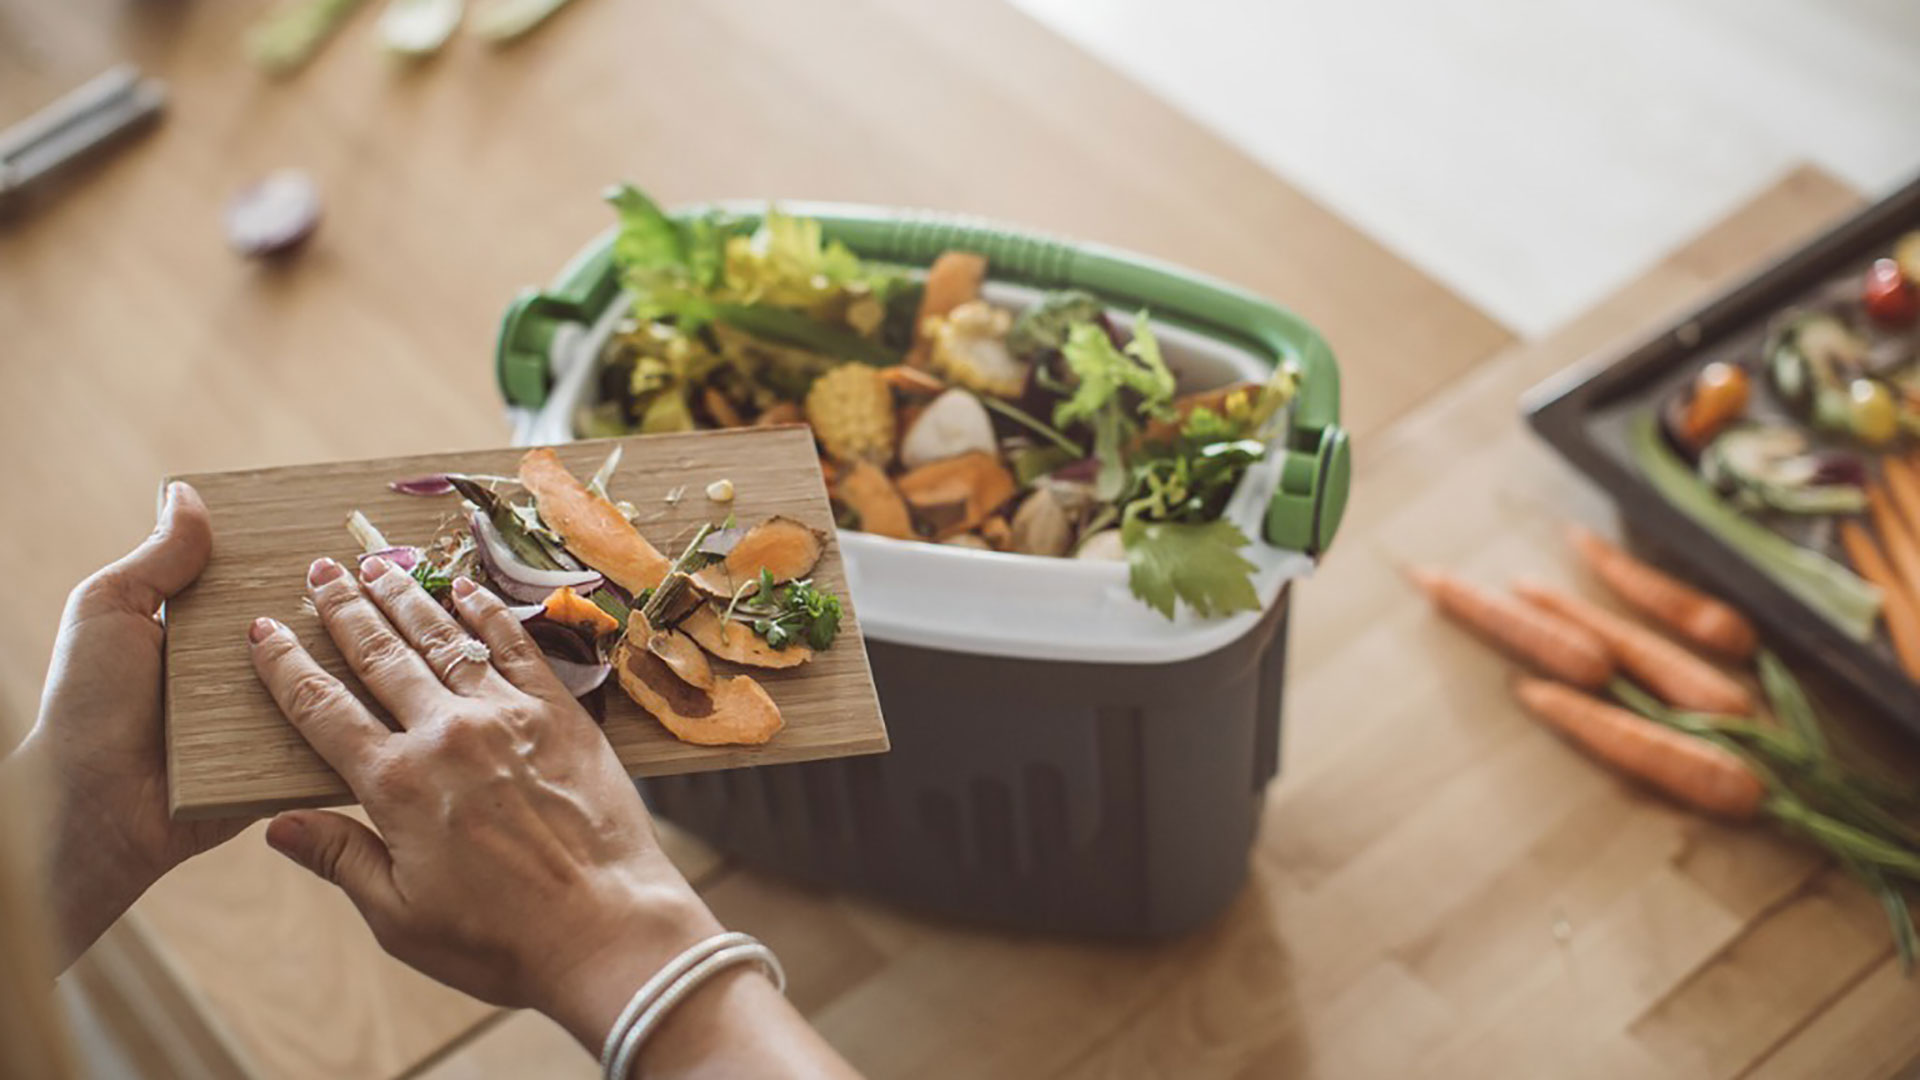 Vuoi ridurre lo spreco alimentare? Ecco 5 soluzioni pratiche